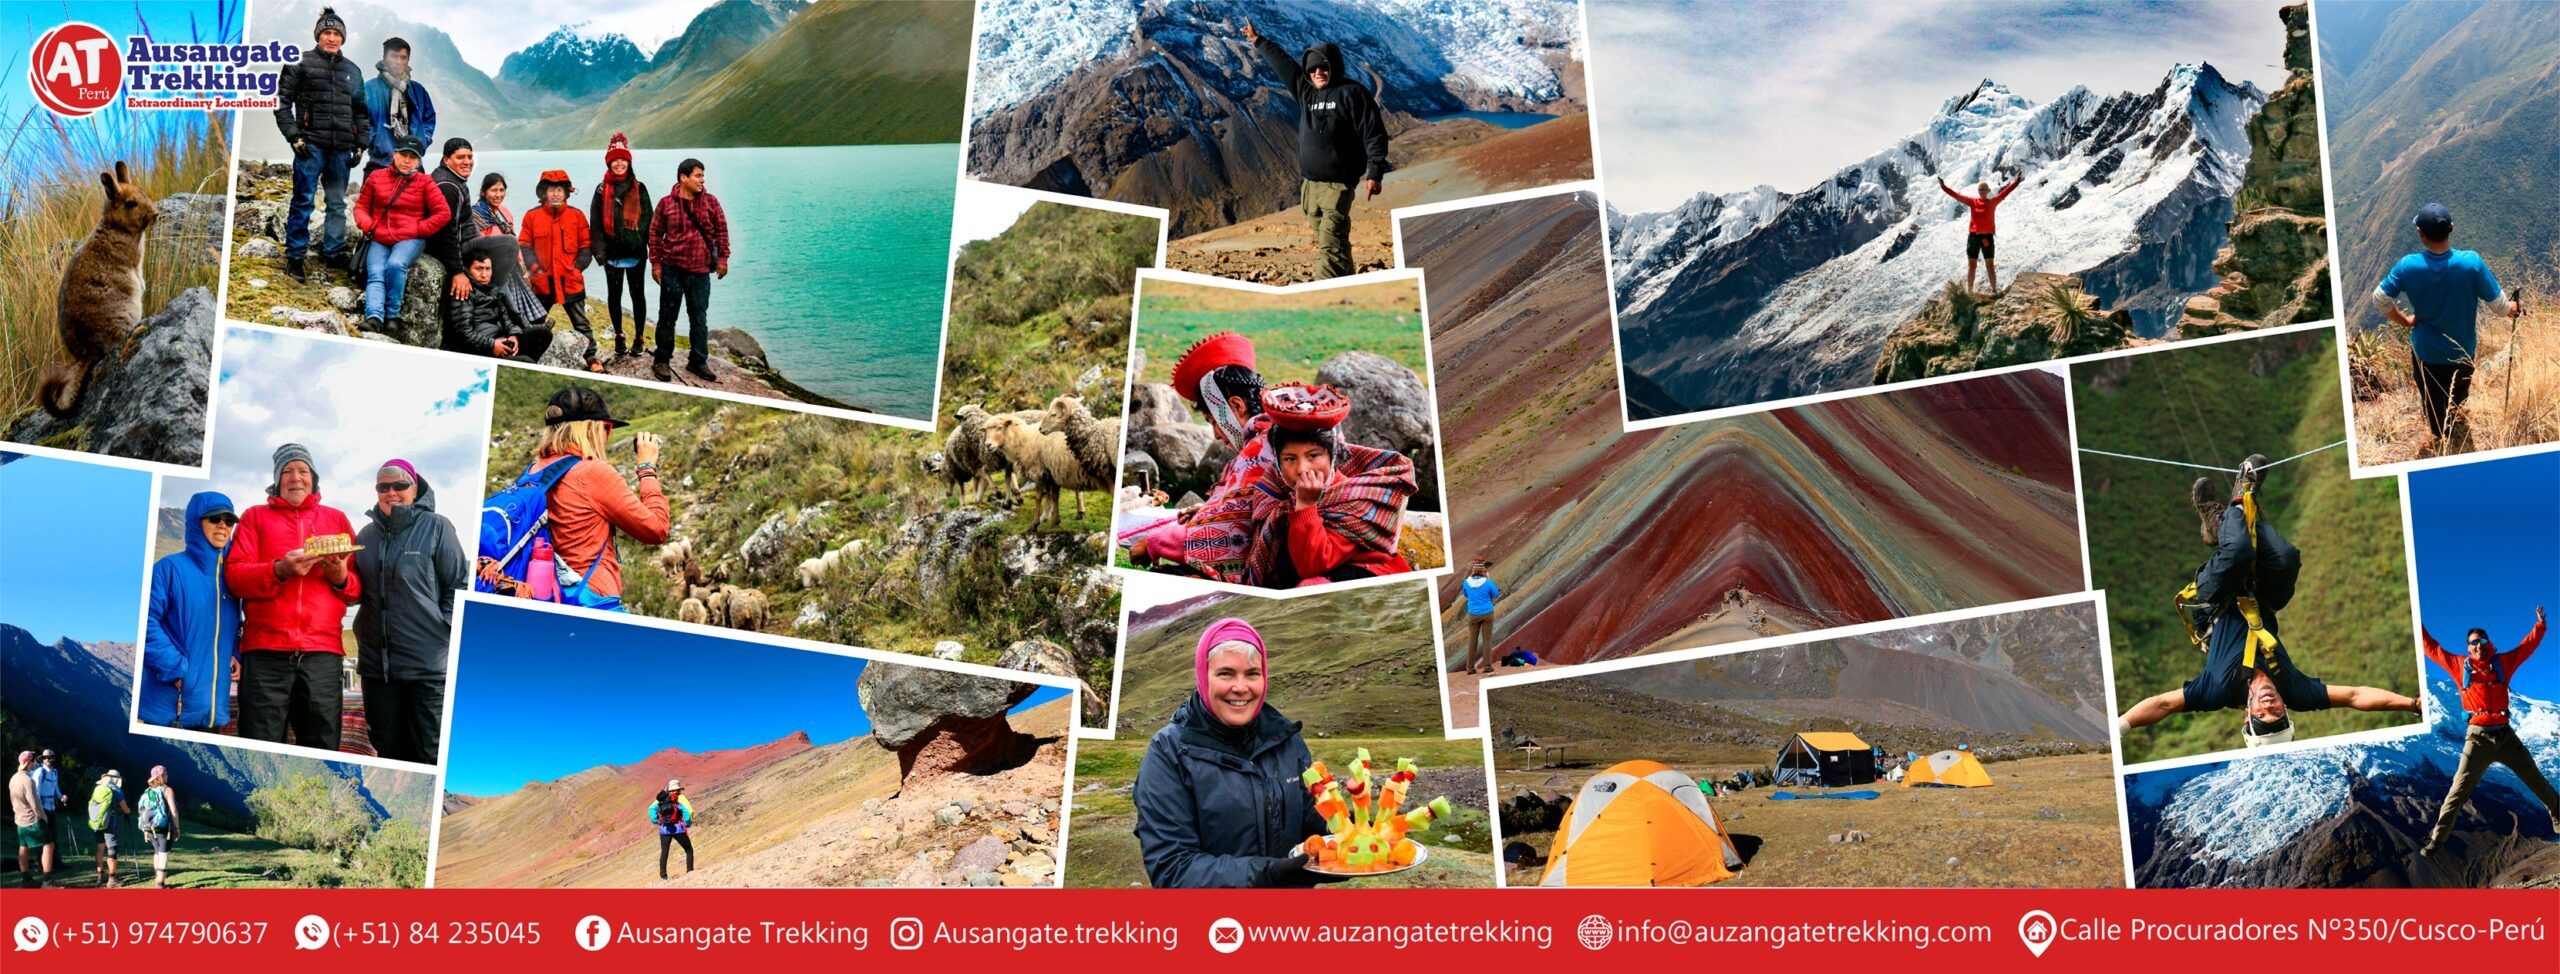 Peru Travel Guide: How to Travel in Peru - Ausangate Trekking Peru